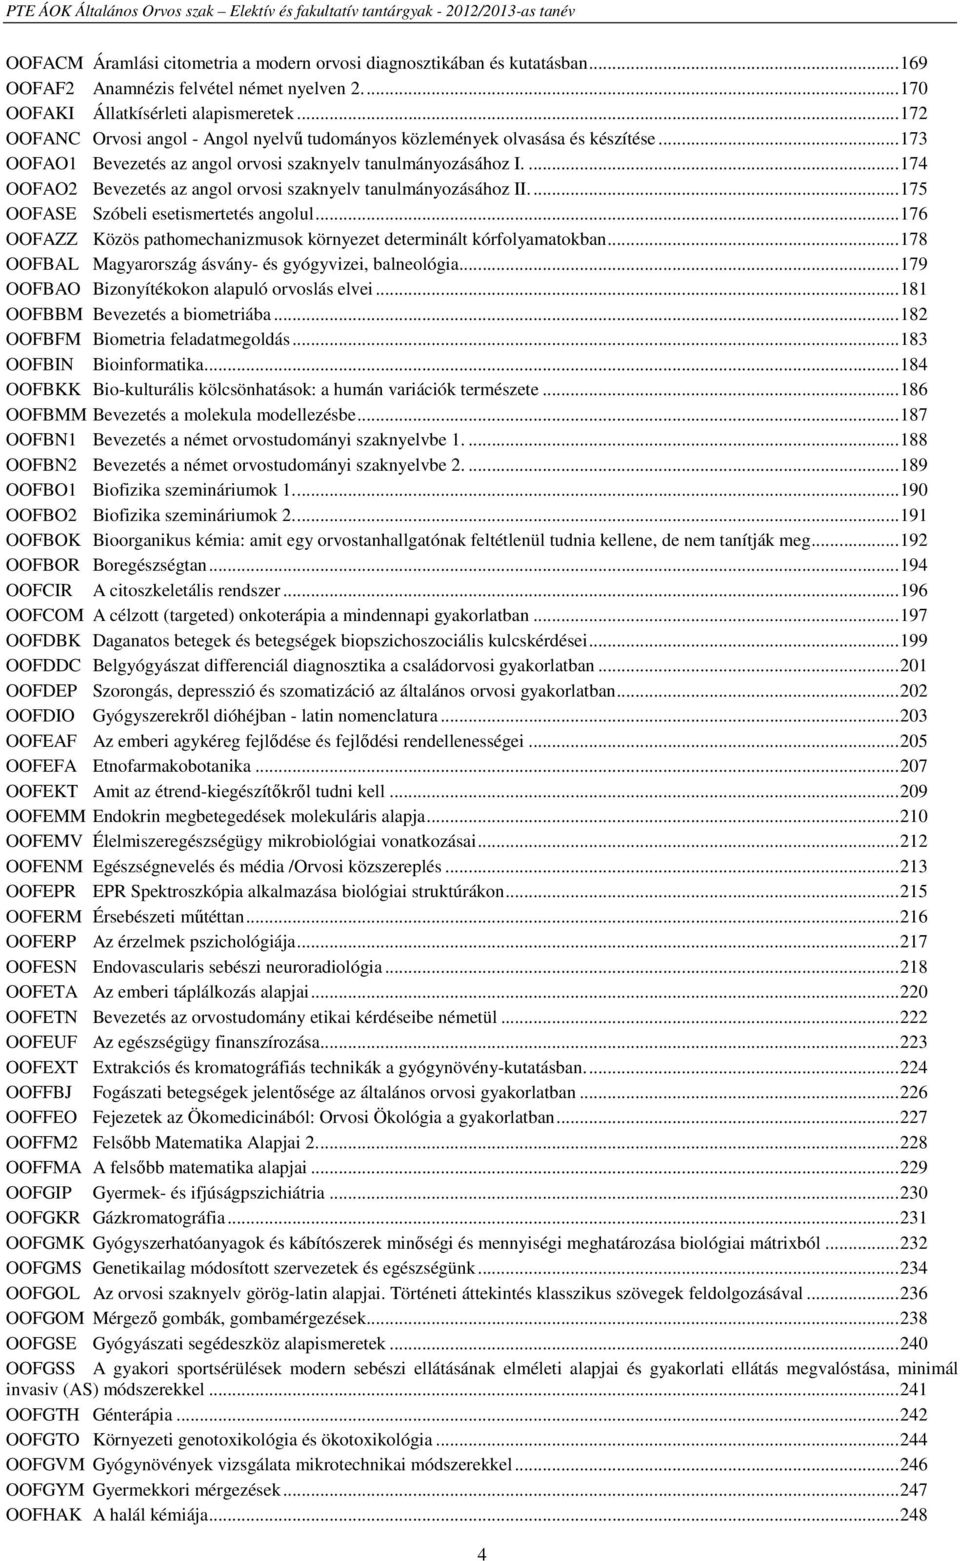 ...174 OOFAO2 Bevezetés az angol orvosi szaknyelv tanulmányozásához II...175 OOFASE Szóbeli esetismertetés angolul...176 OOFAZZ Közös pathomechanizmusok környezet determinált kórfolyamatokban.